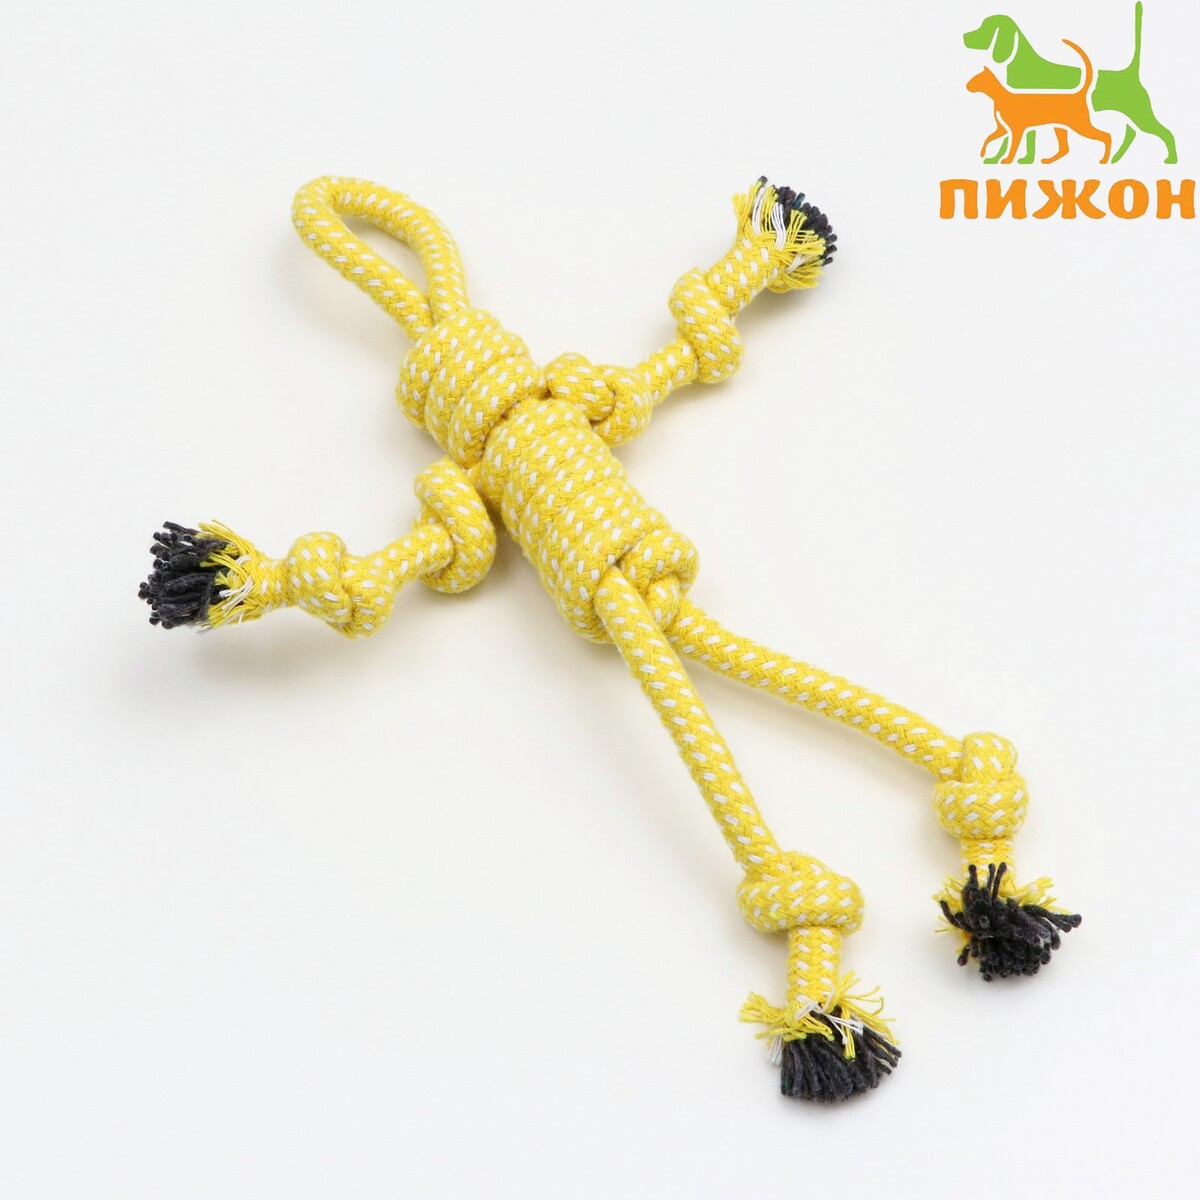 Игрушка канатная игрушка канатная плетеная до 100 г до 20 см желтая голубая белая